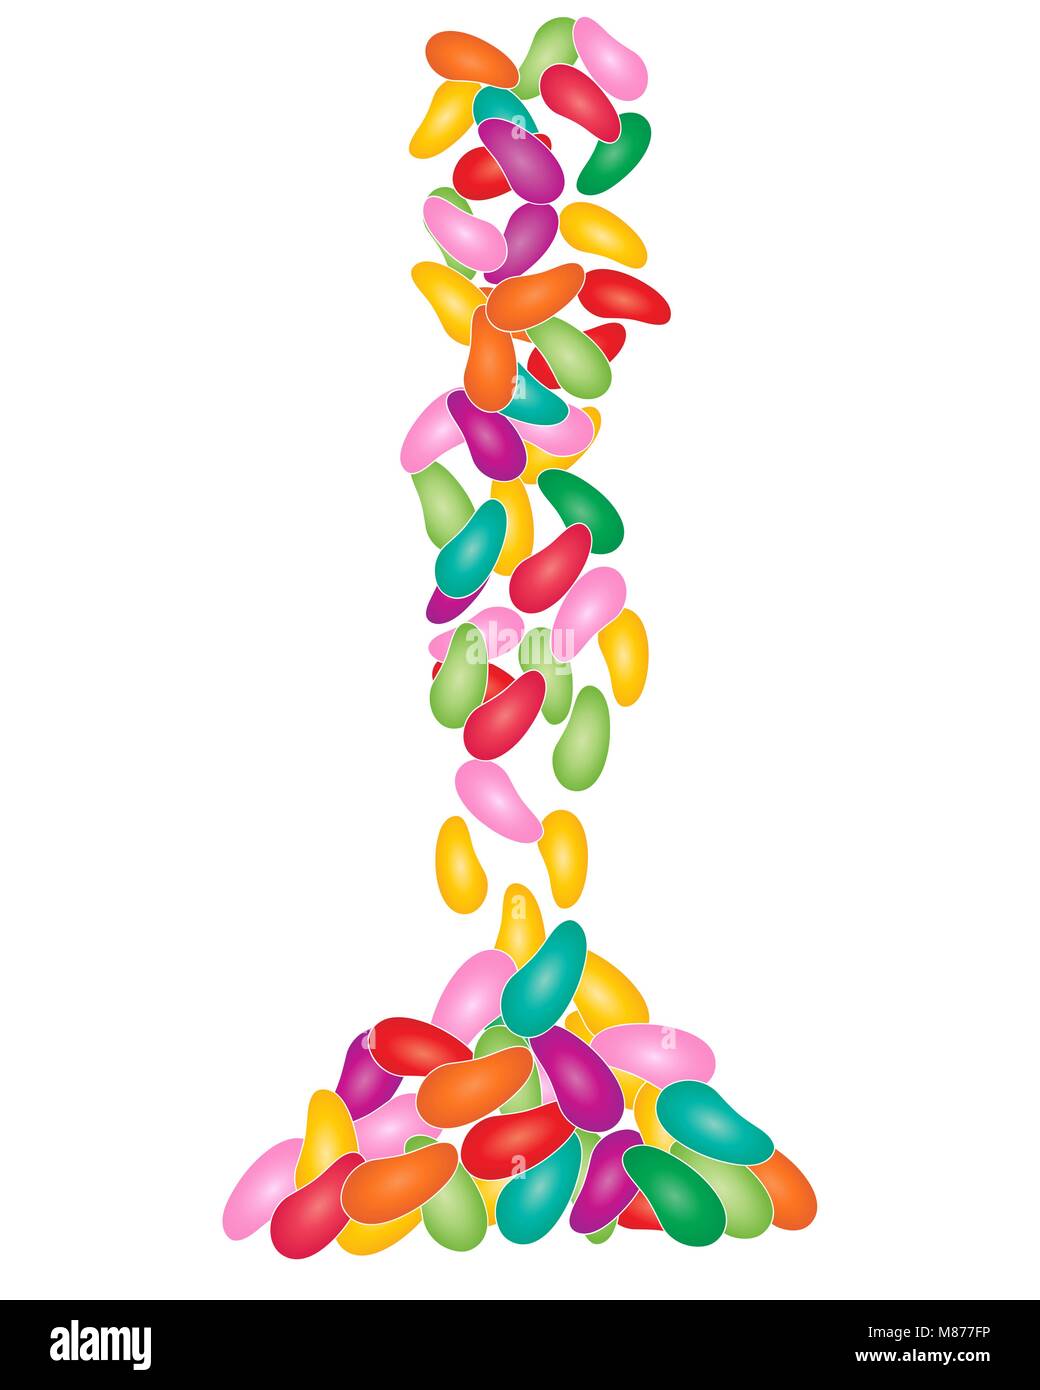 Un vecteur illustration en eps 10 format d'un tas de bonbons bonbon colorés sur fond blanc Illustration de Vecteur